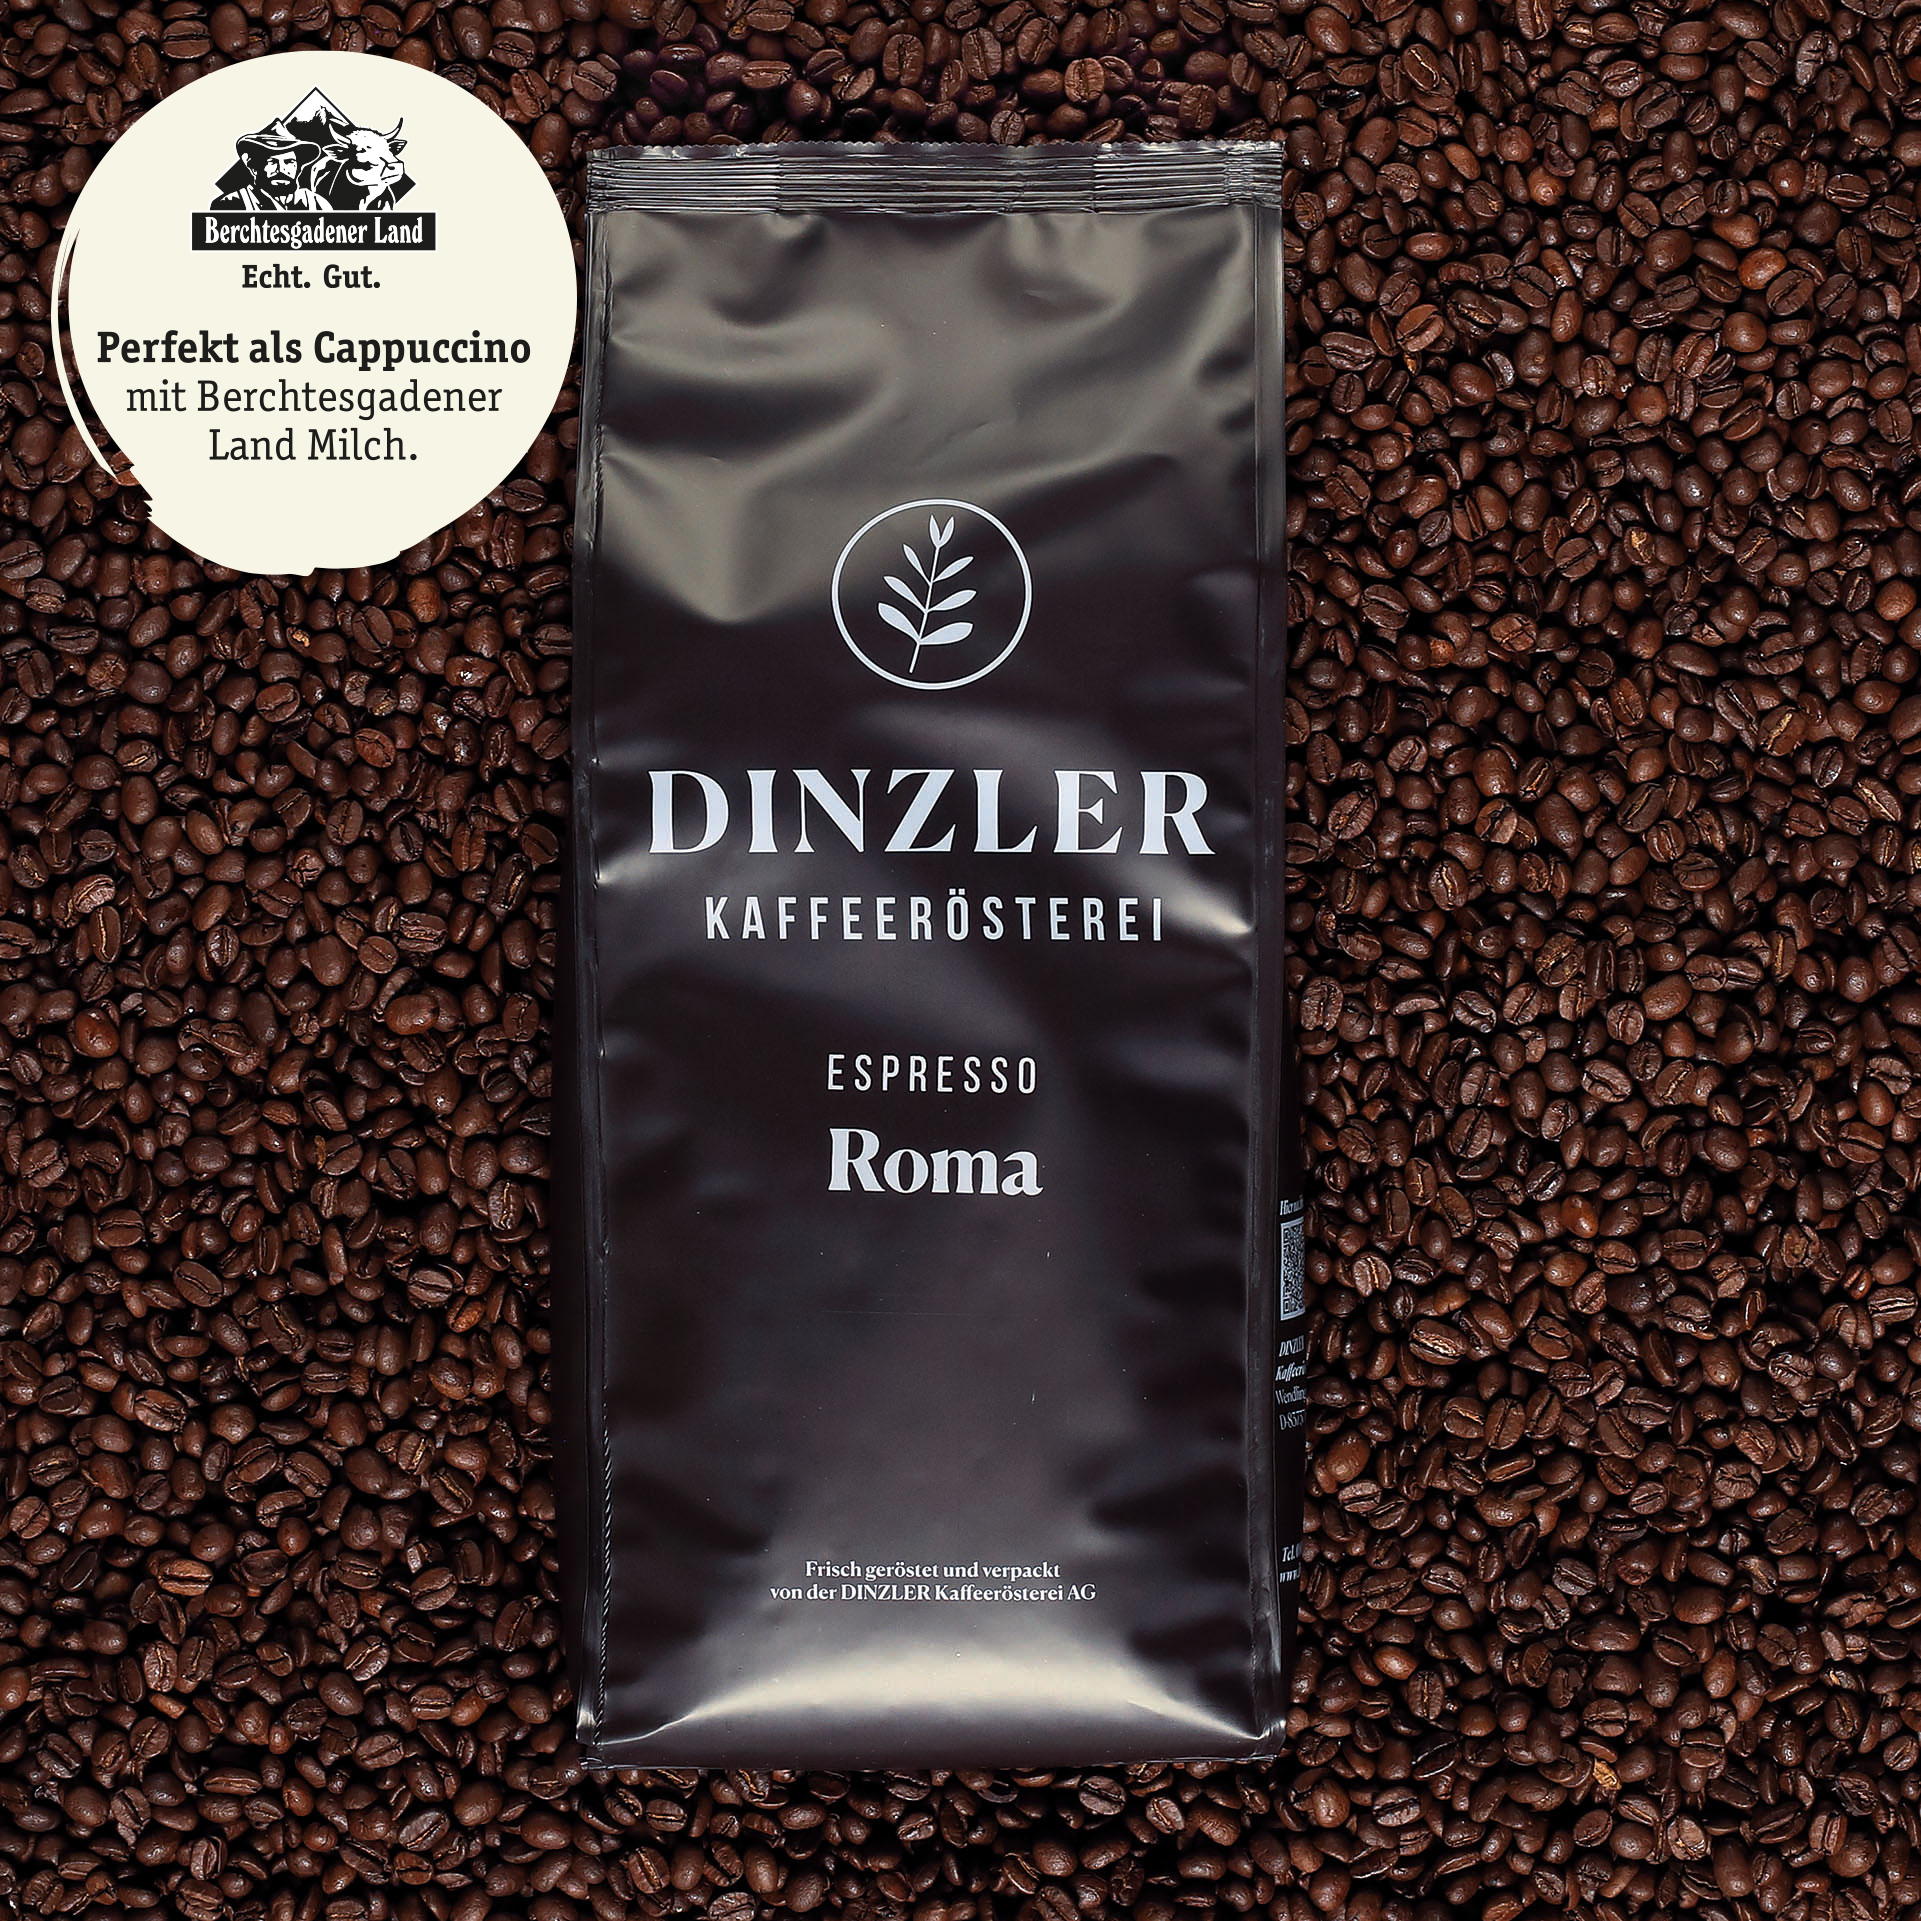 Produktbild DINZLER Espresso Roma| DINZLER Kaffeerösterei